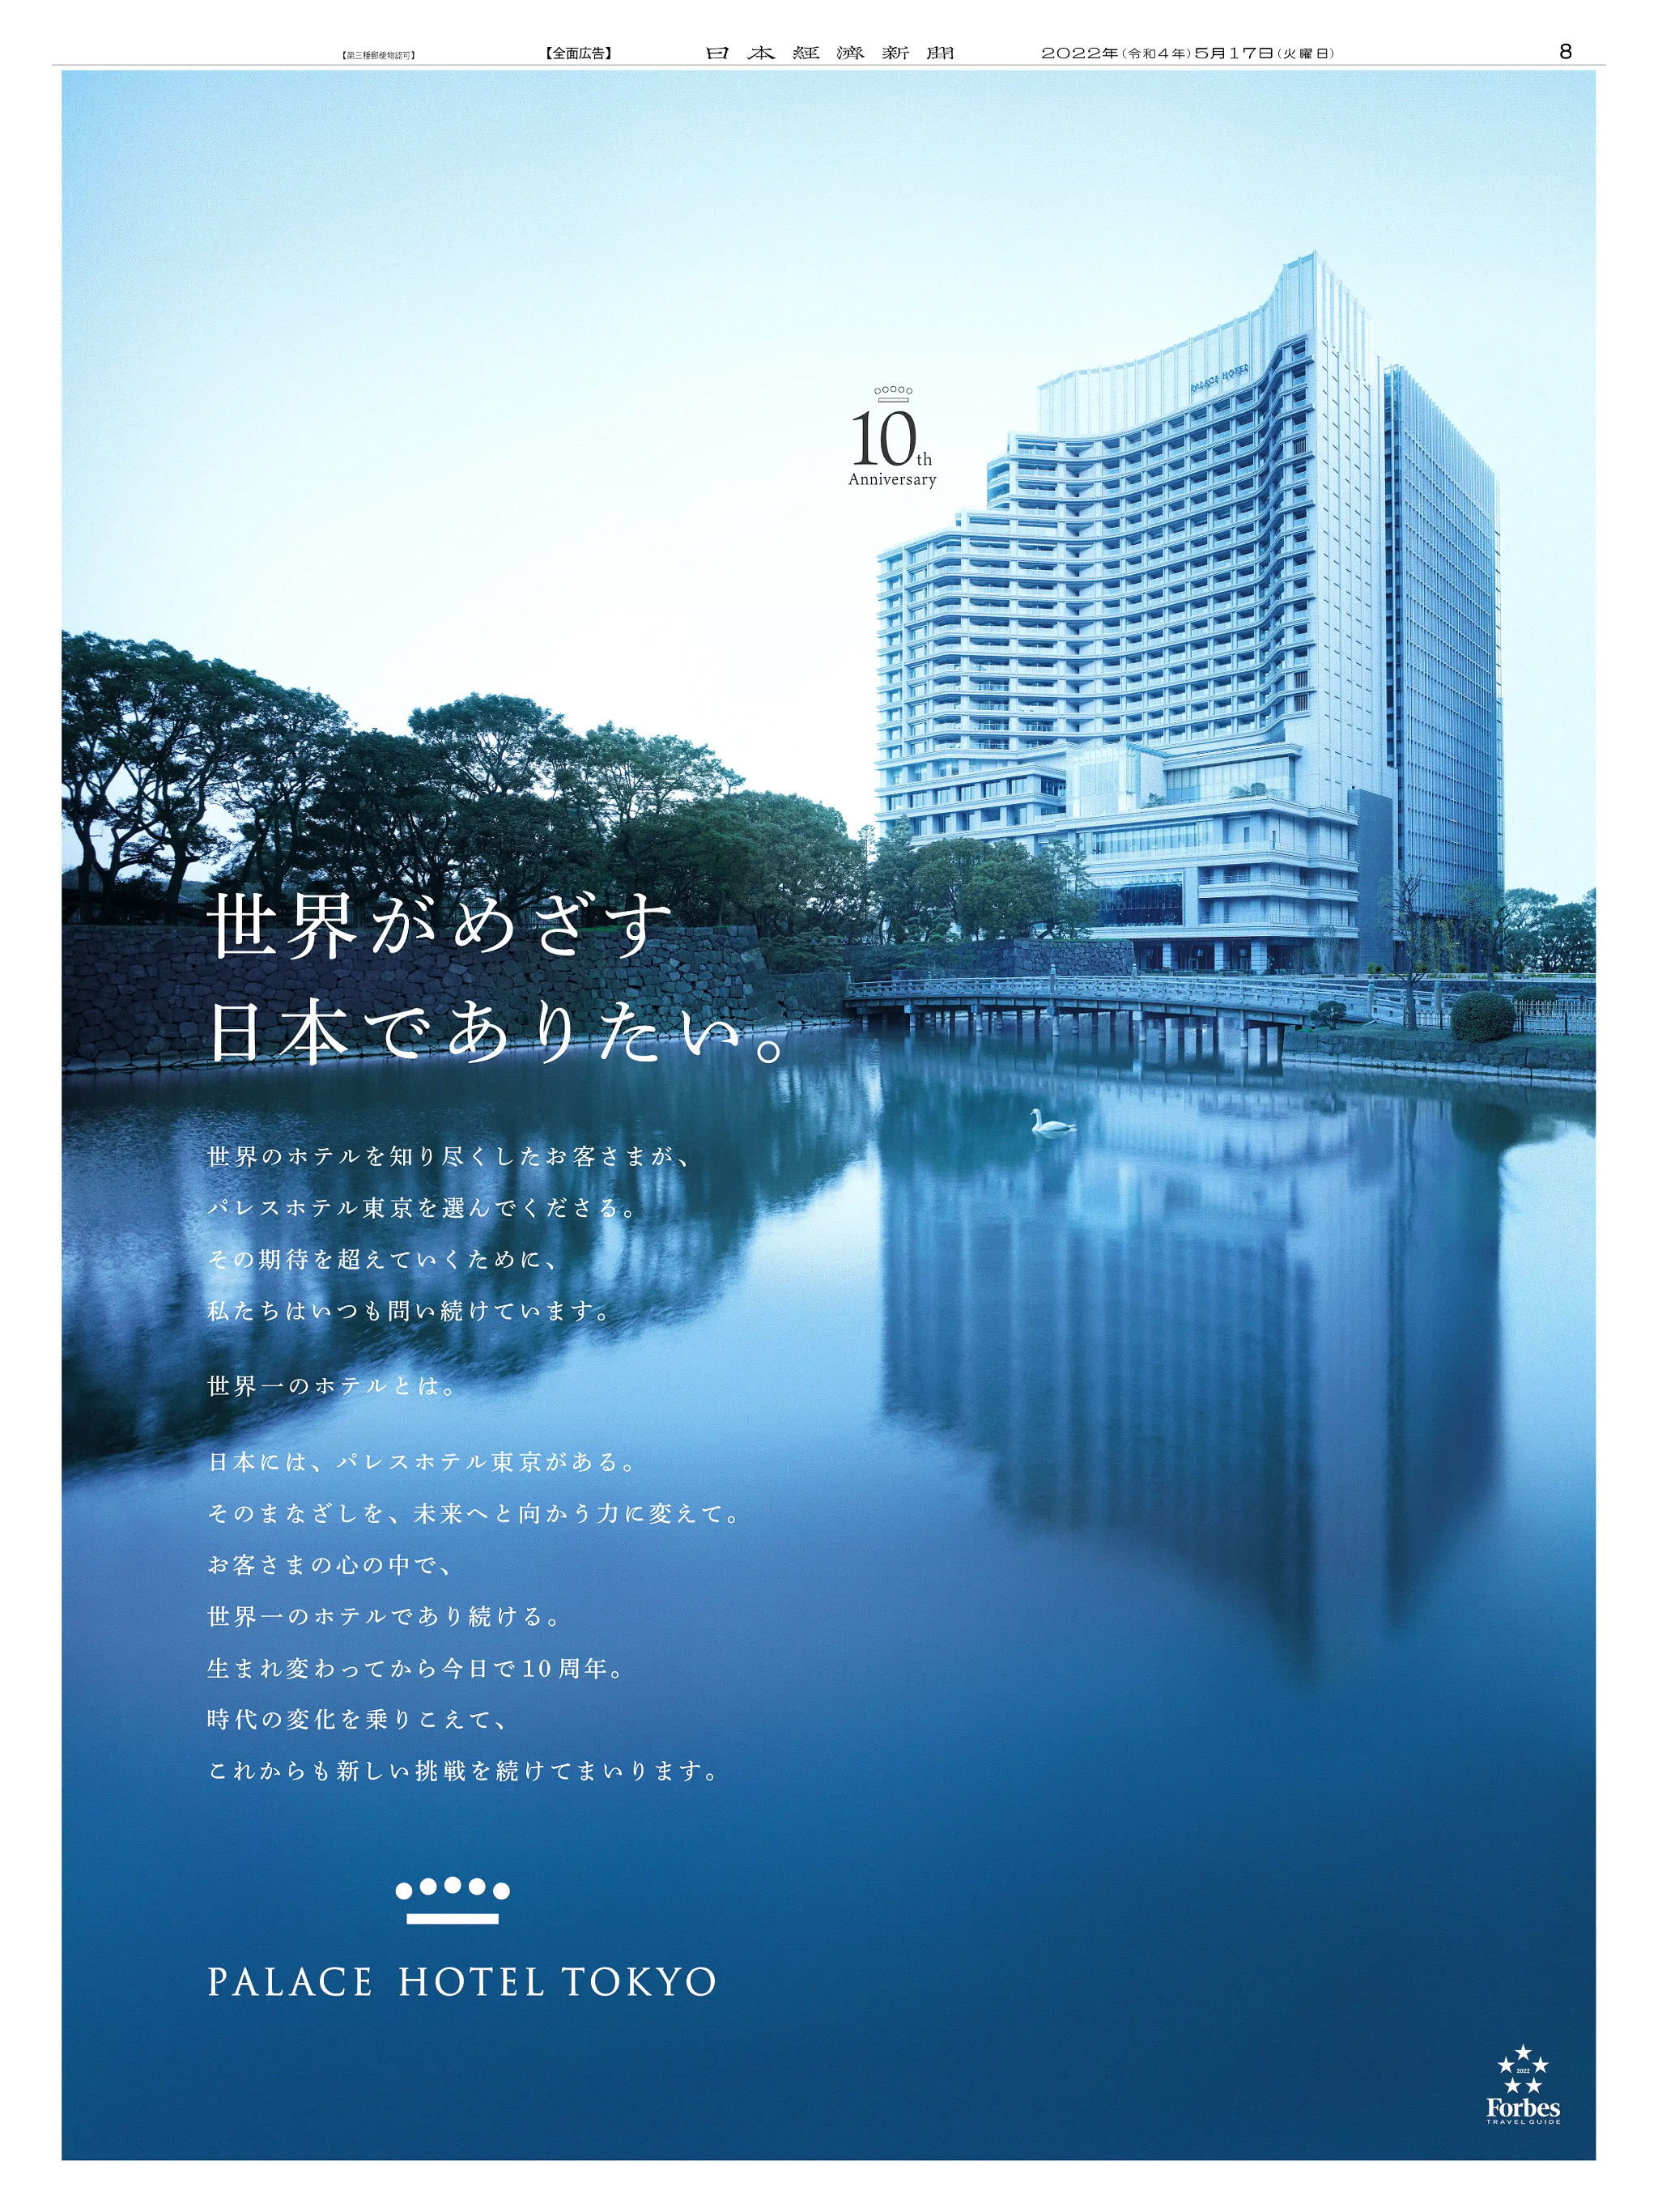 周年記念広告事例 「パレスホテル東京 開業10周年」